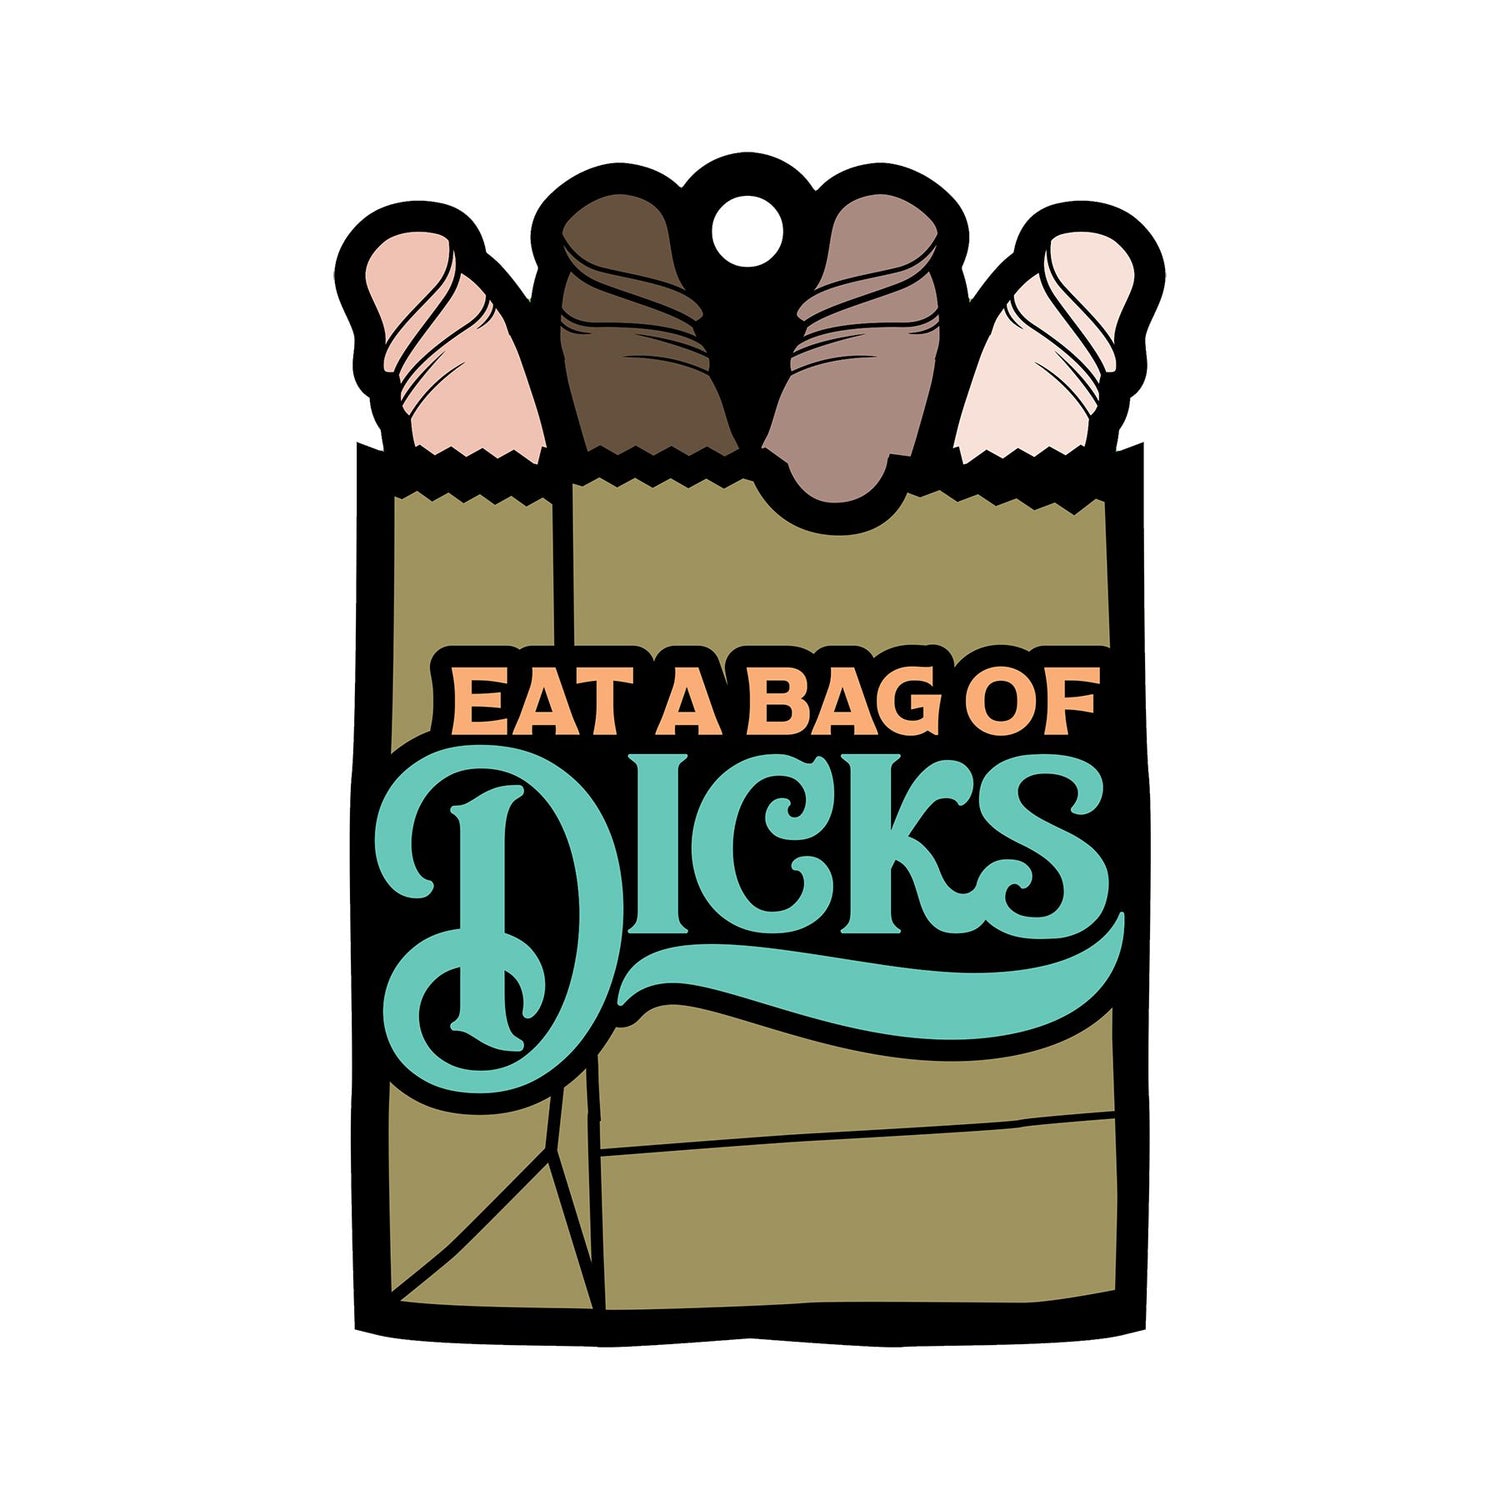 Eat A Bag Of Dicks Air Freshner